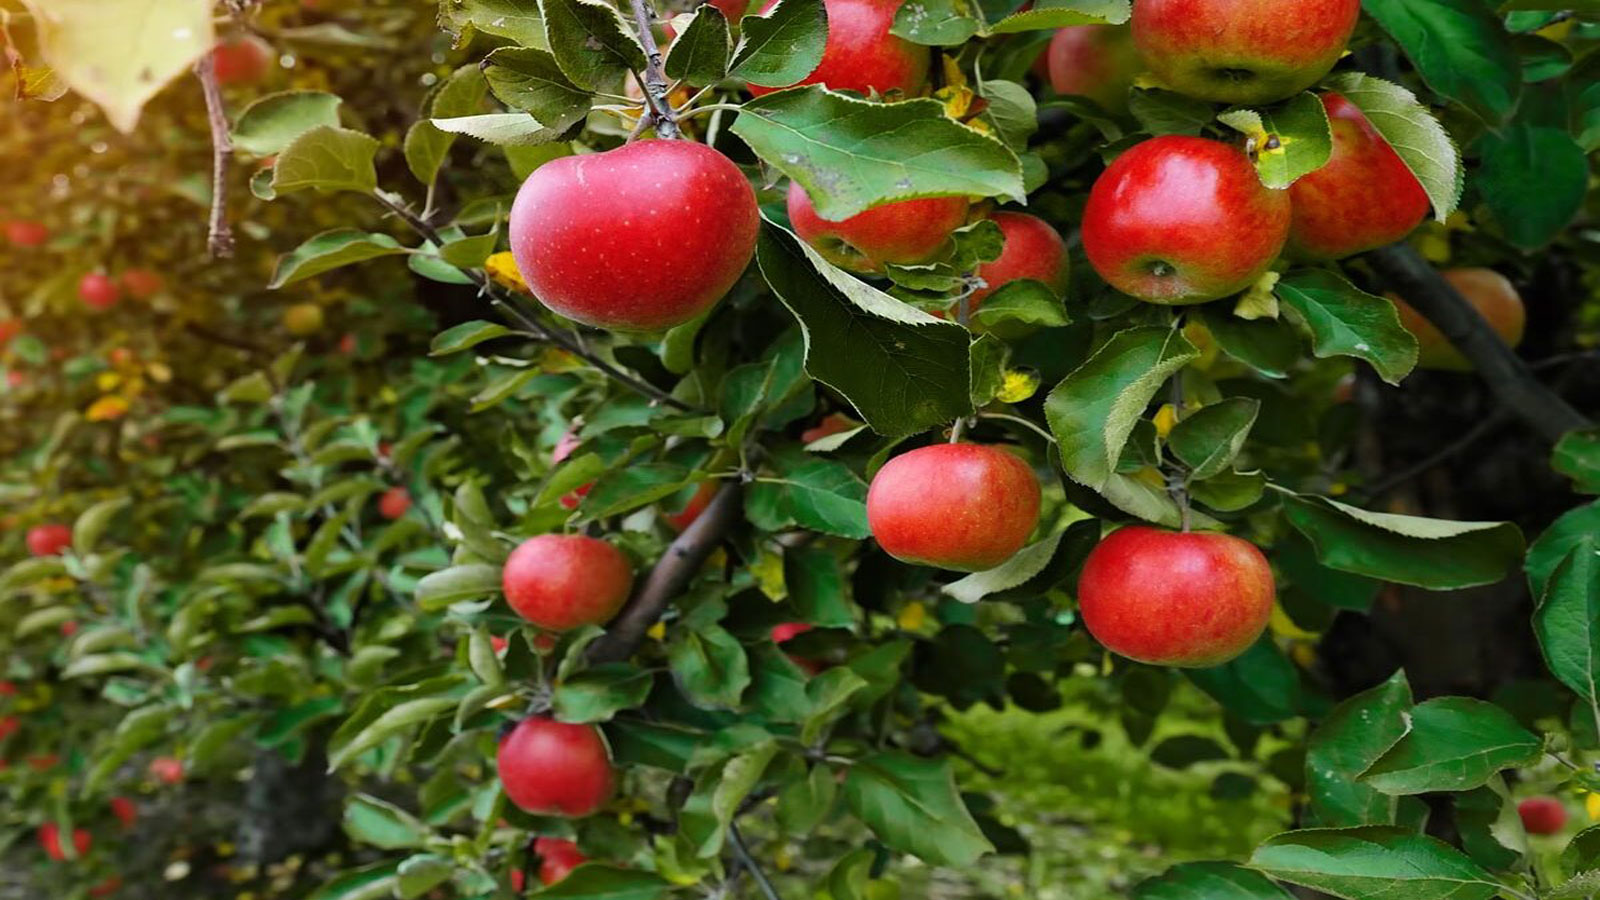 بهترین کود برای درخت سیب - کوددهی درخت سیب چگونه و در چه زمانی است؟